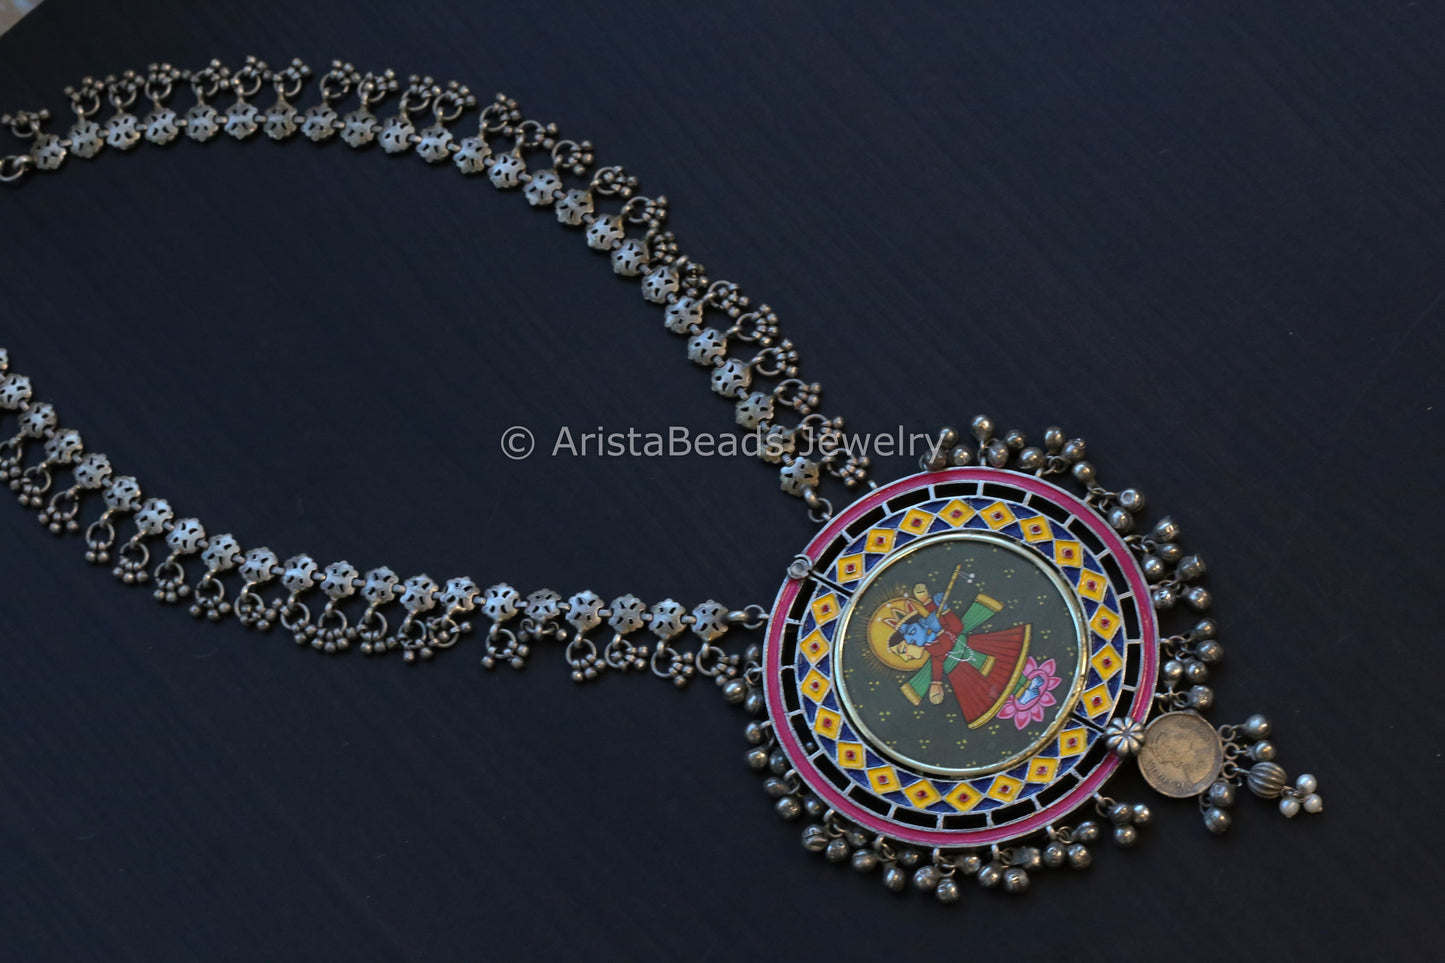 Oxidized Hand-Painted Enamel Necklace - Krishna